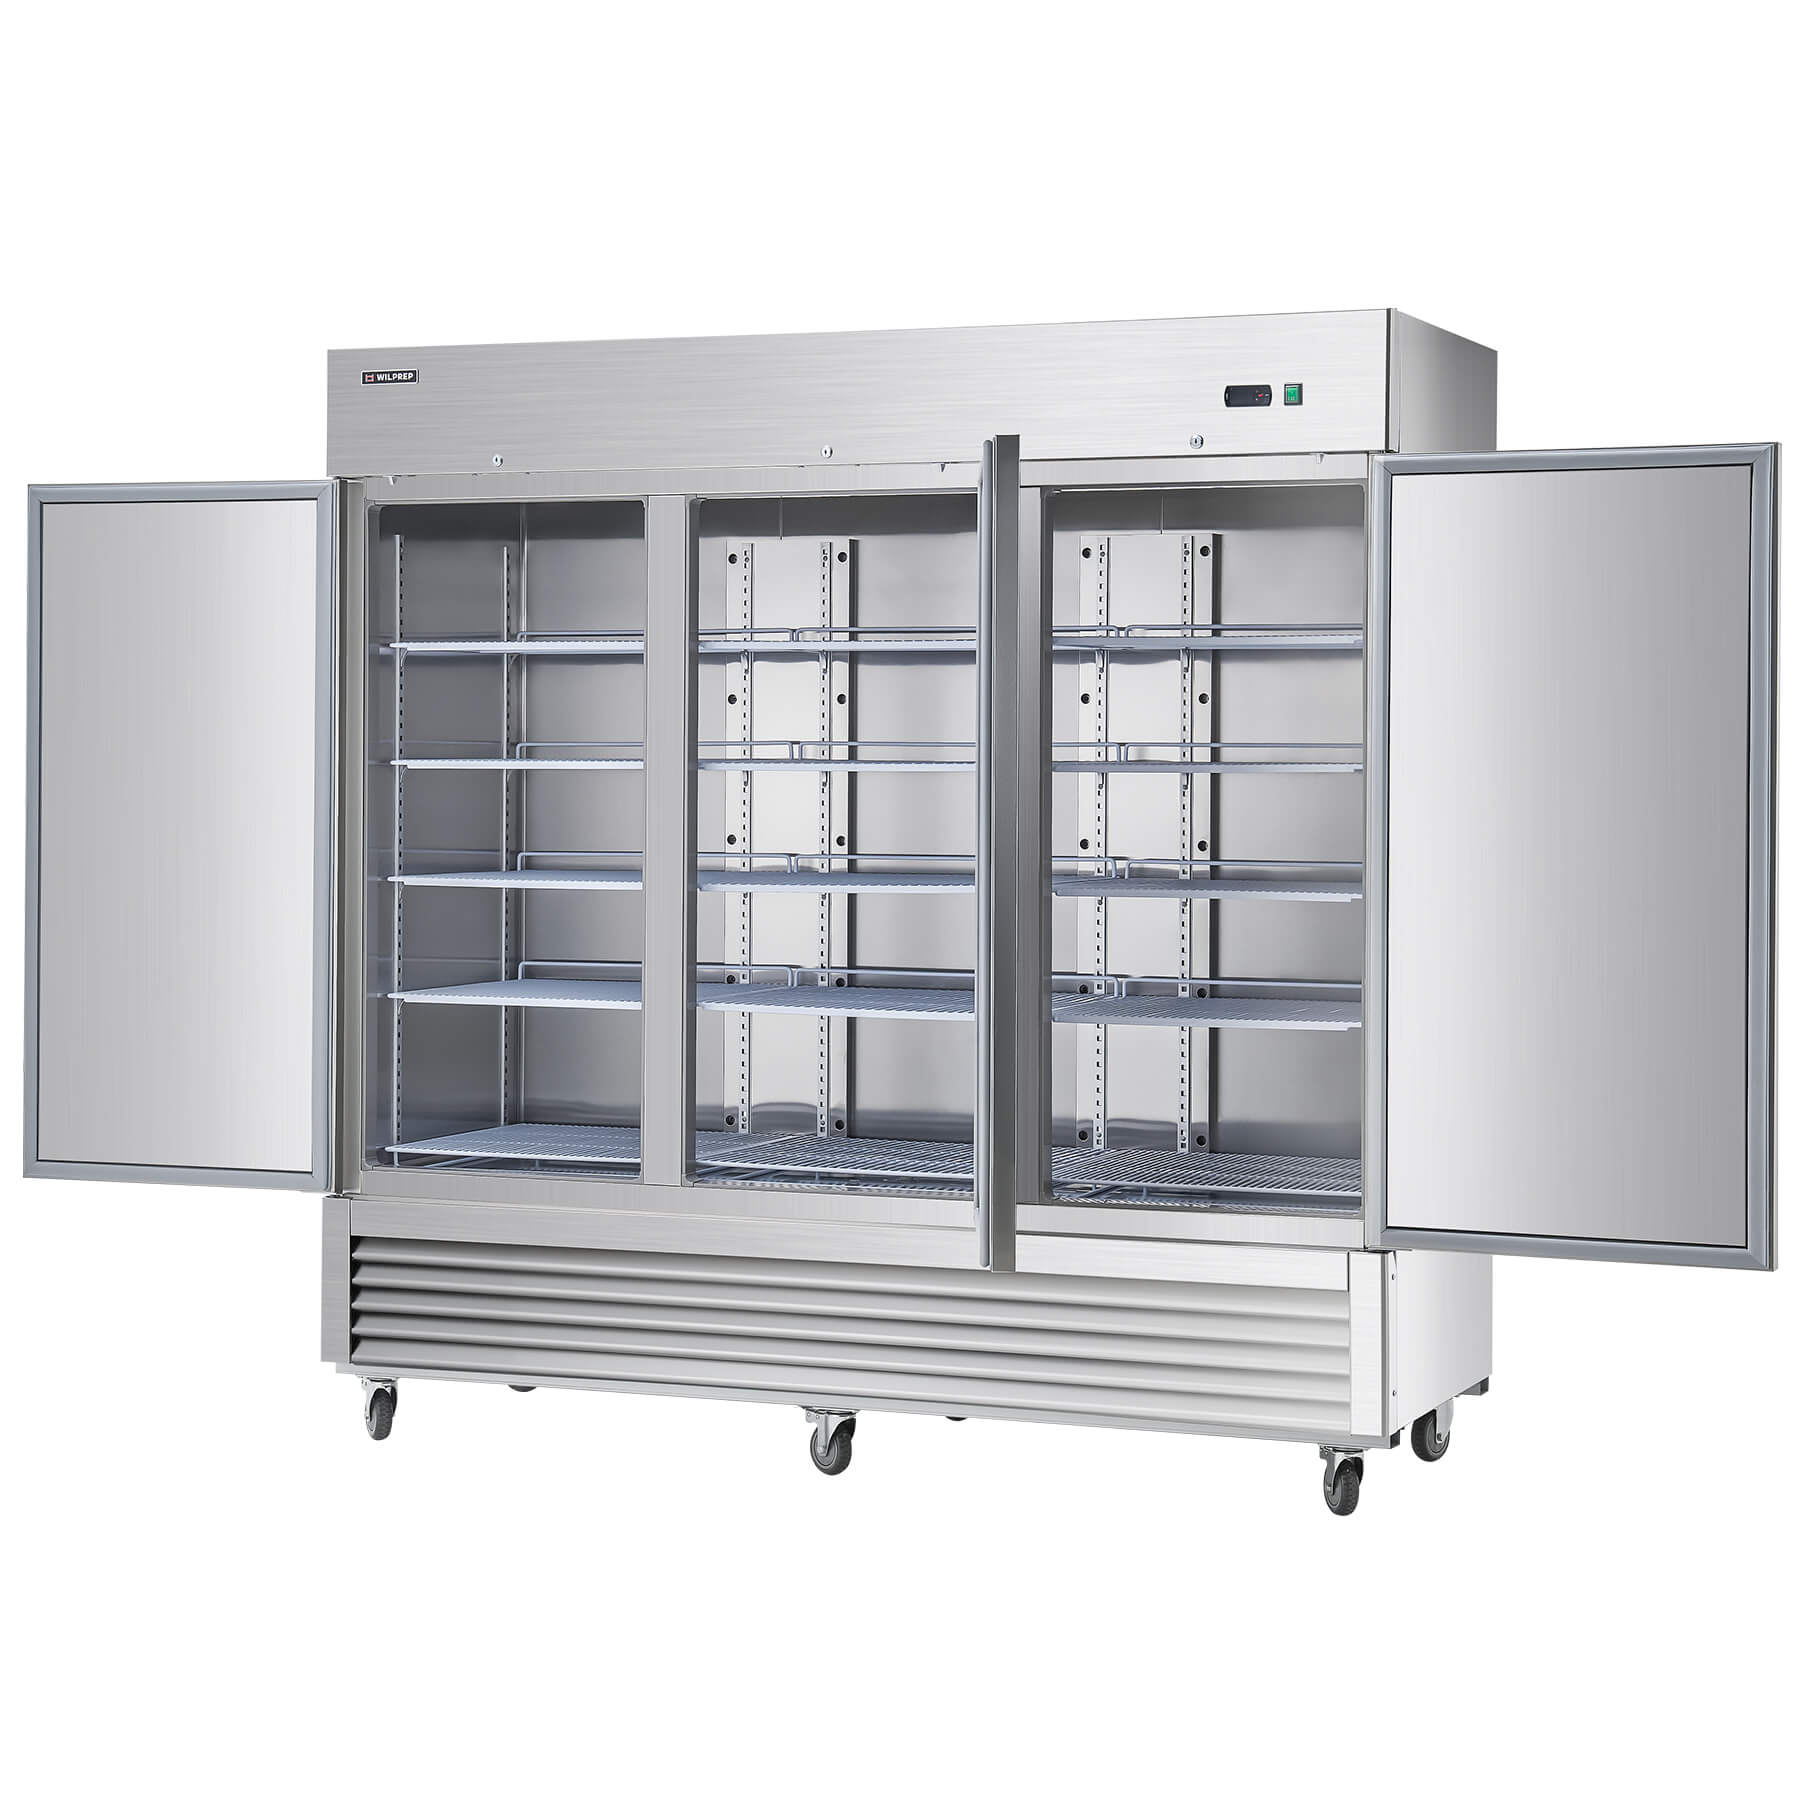 81" Triple Door Commercial Freezer  60.9 cu. ft Capacity